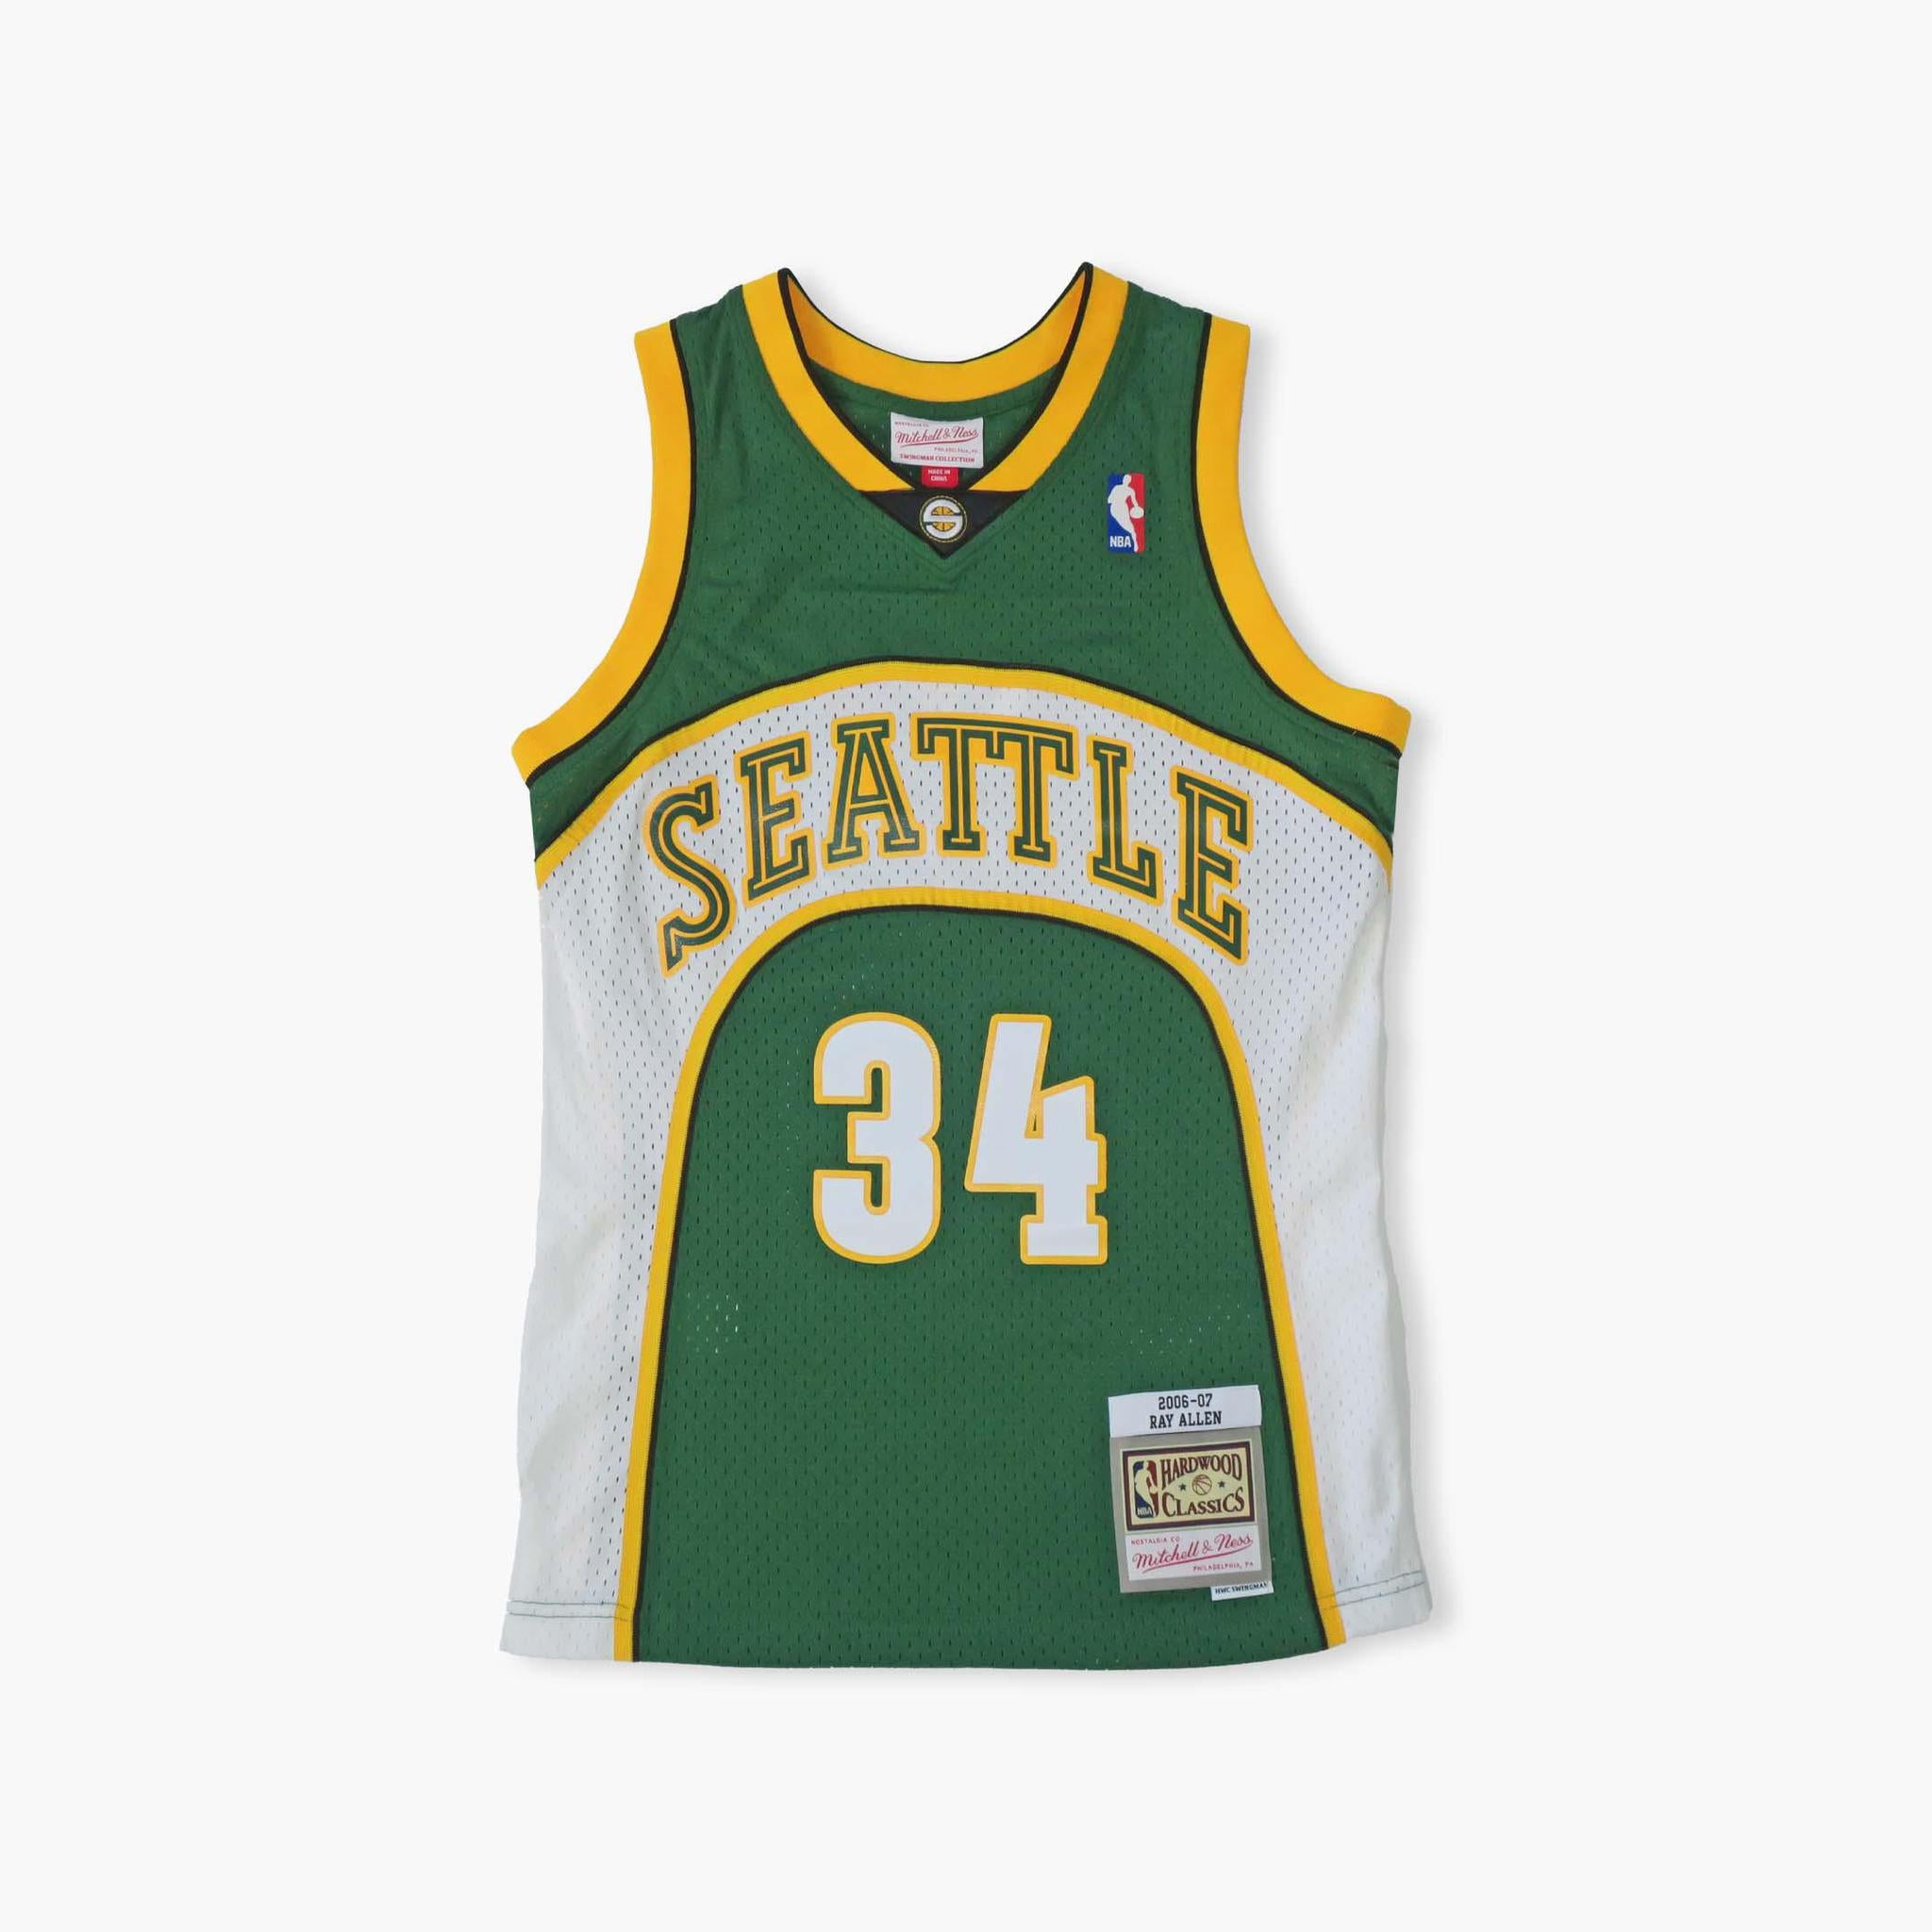 Vintage Seattle Sonics NBA hoodie. Measures XS